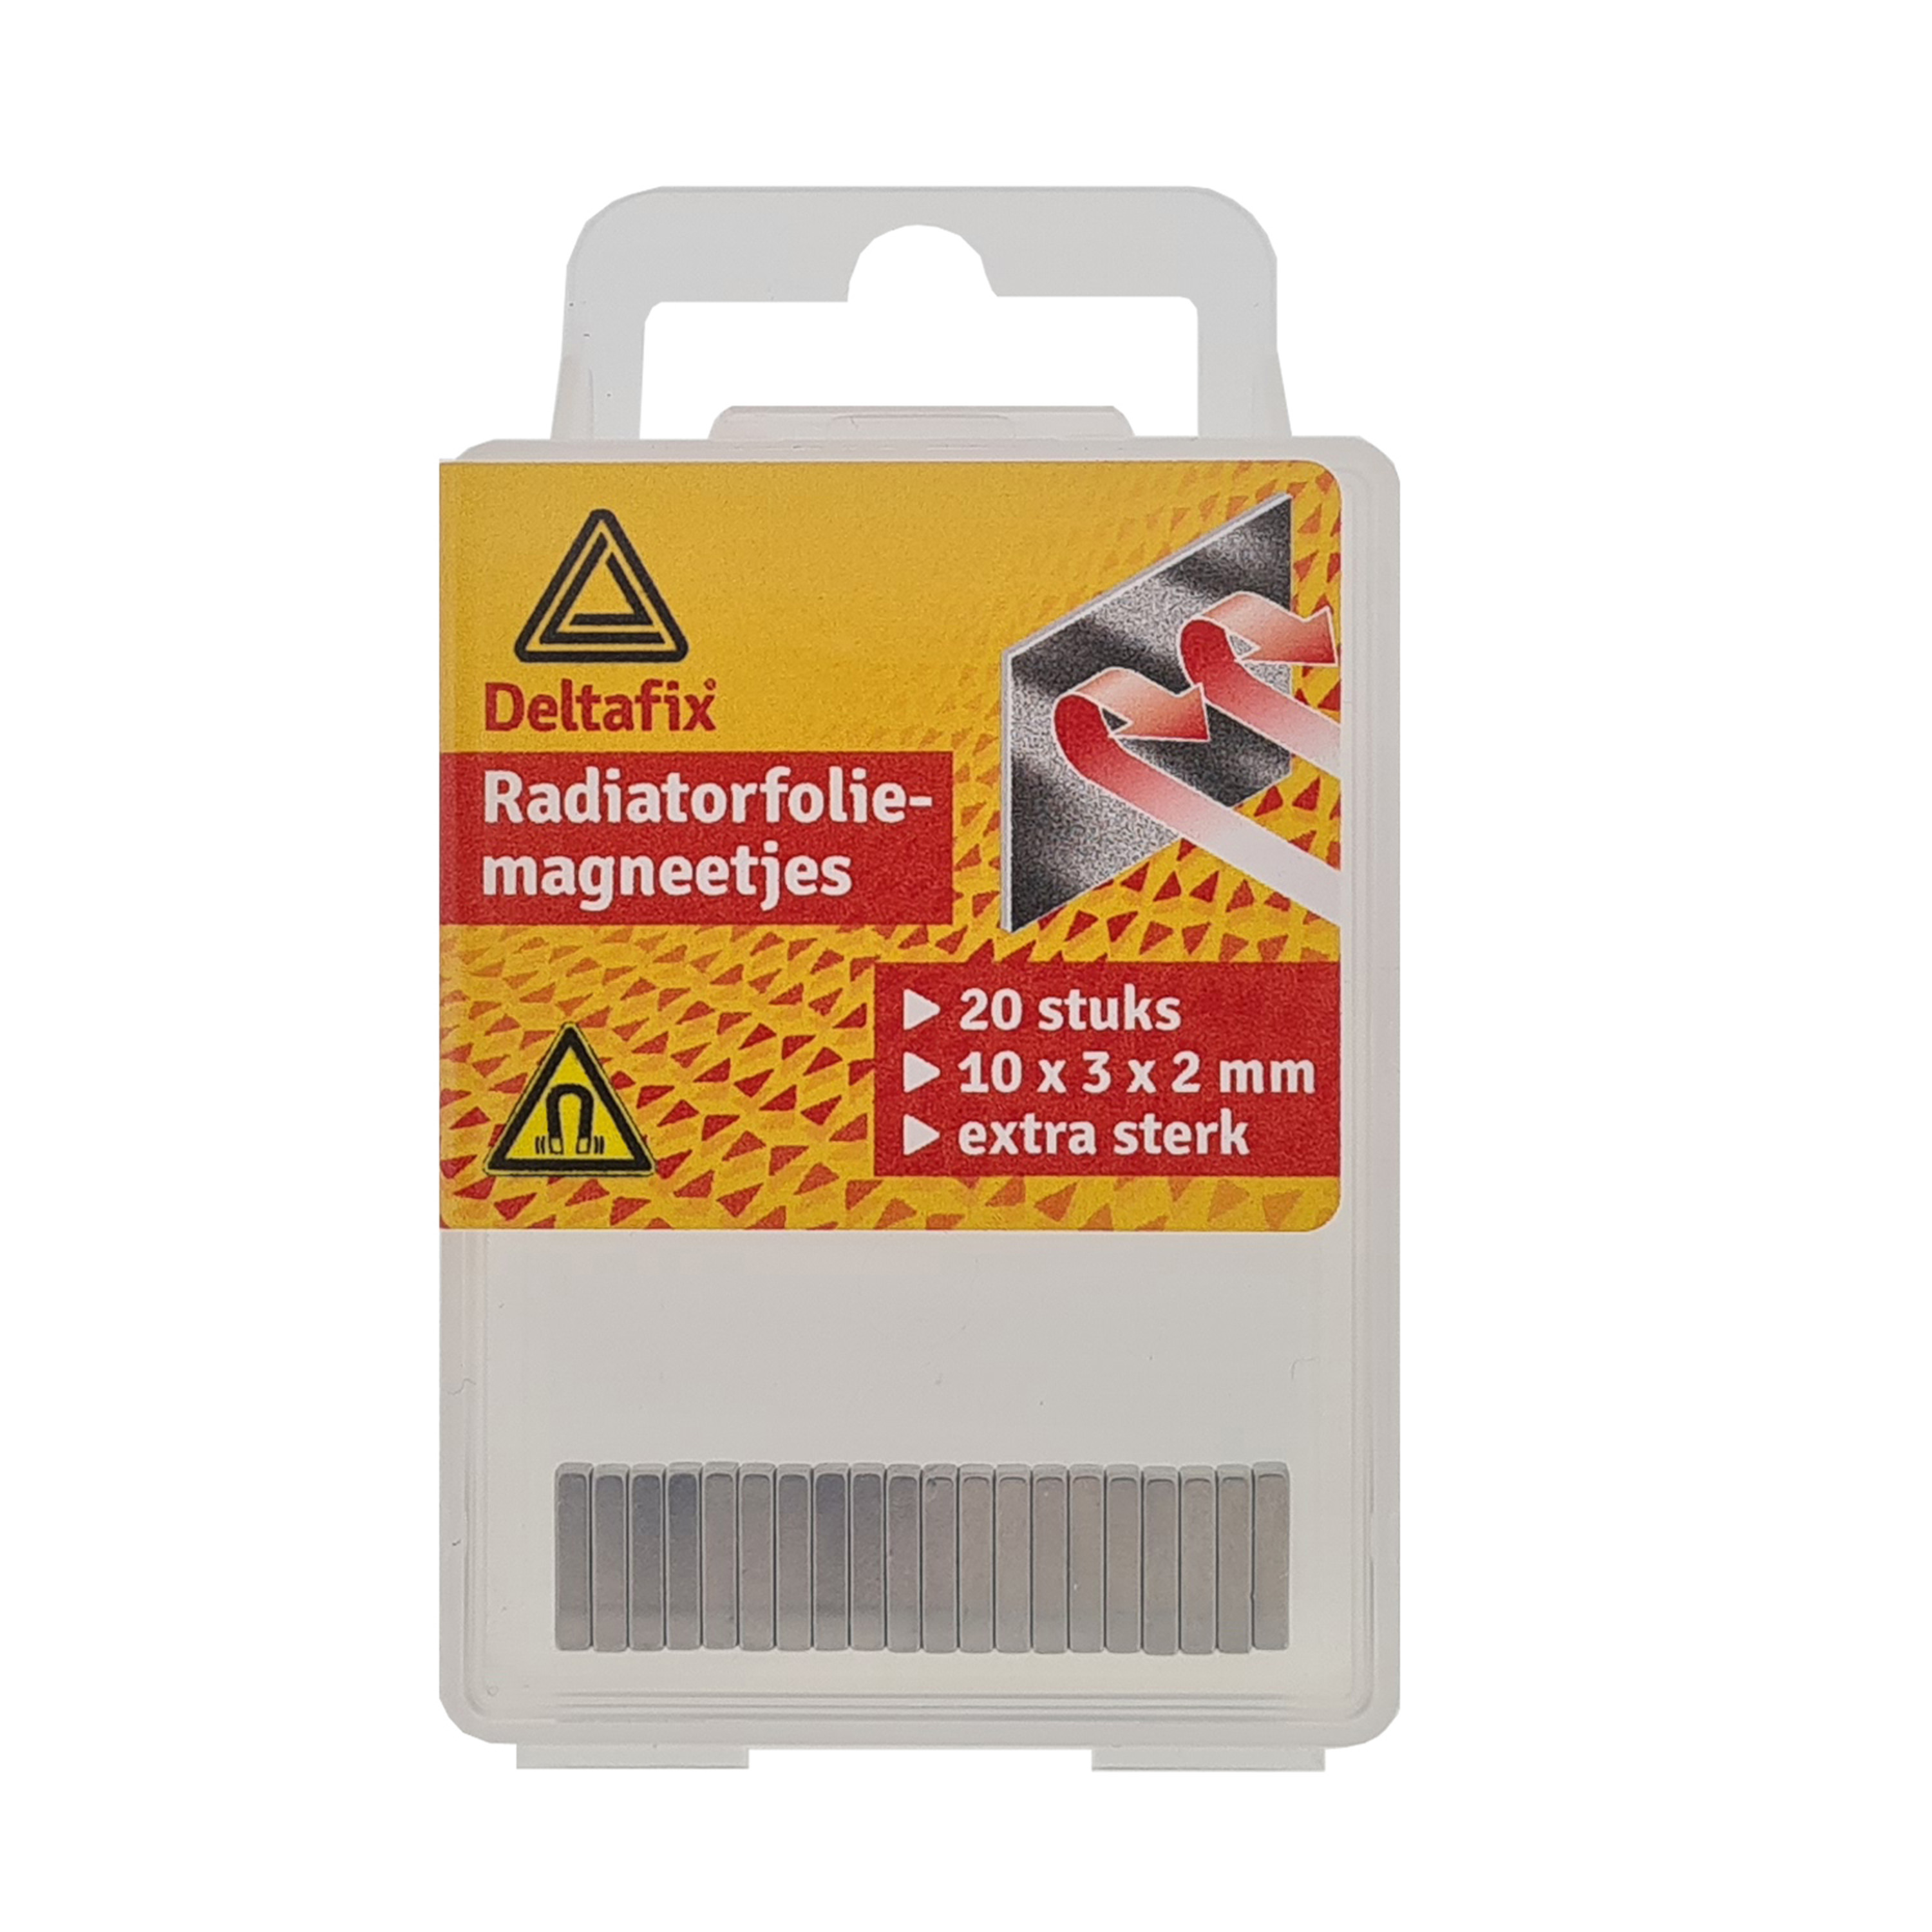 Radiatorfolie magneten 20x nikkel hittebestendig 10 x 3 x 2 mm